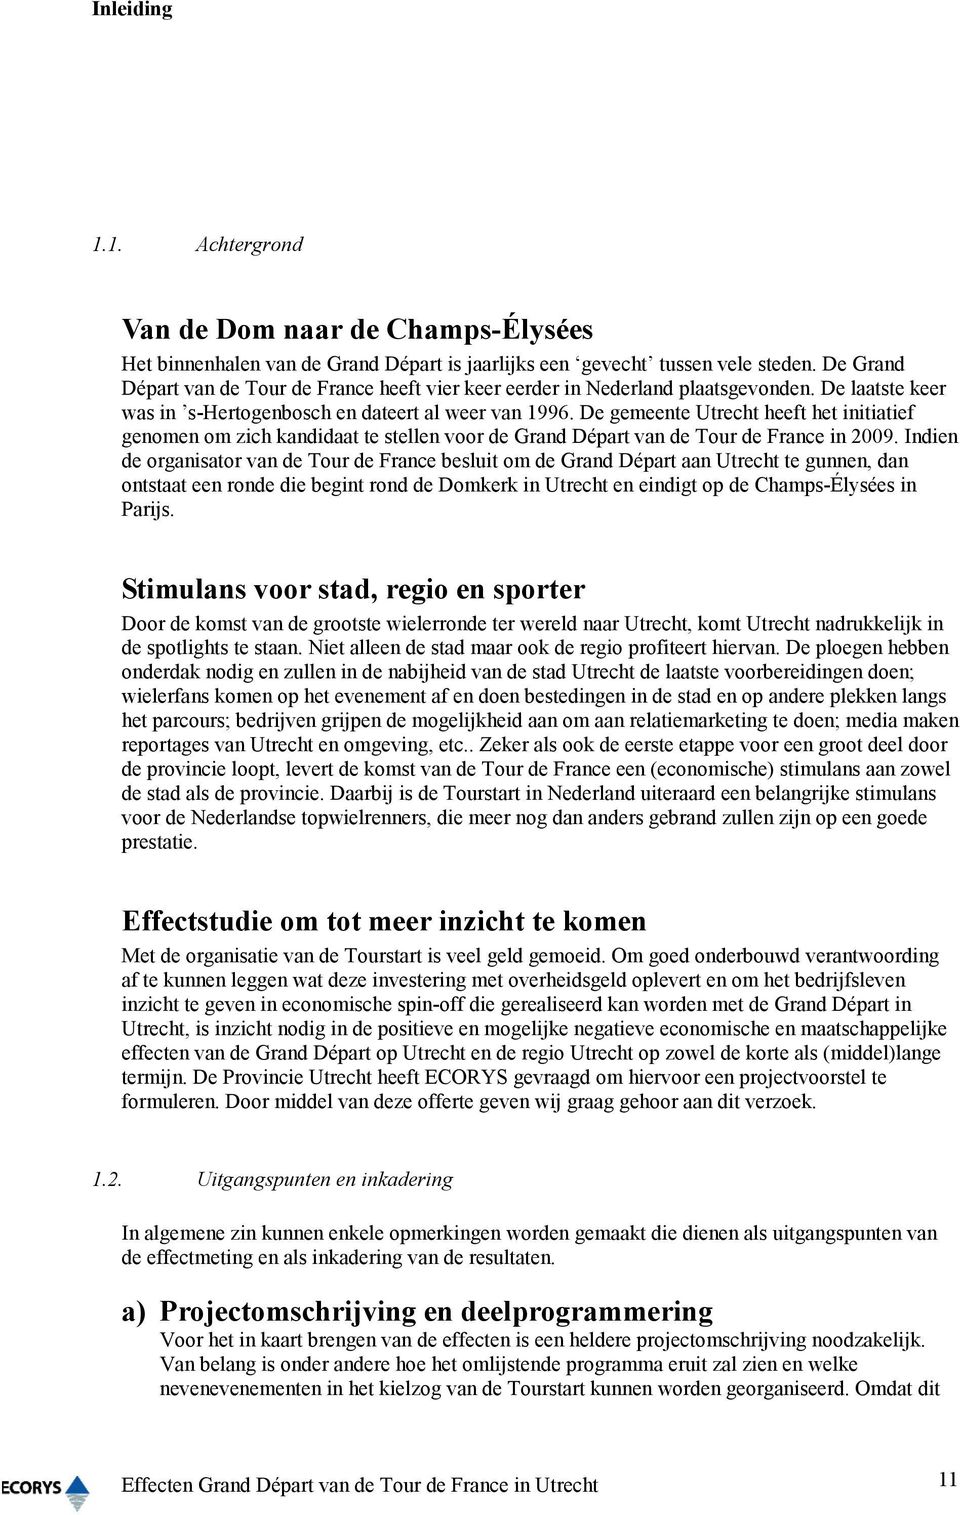 De gemeente Utrecht heeft het initiatief genomen om zich kandidaat te stellen voor de Grand Départ van de Tour de France in 2009.